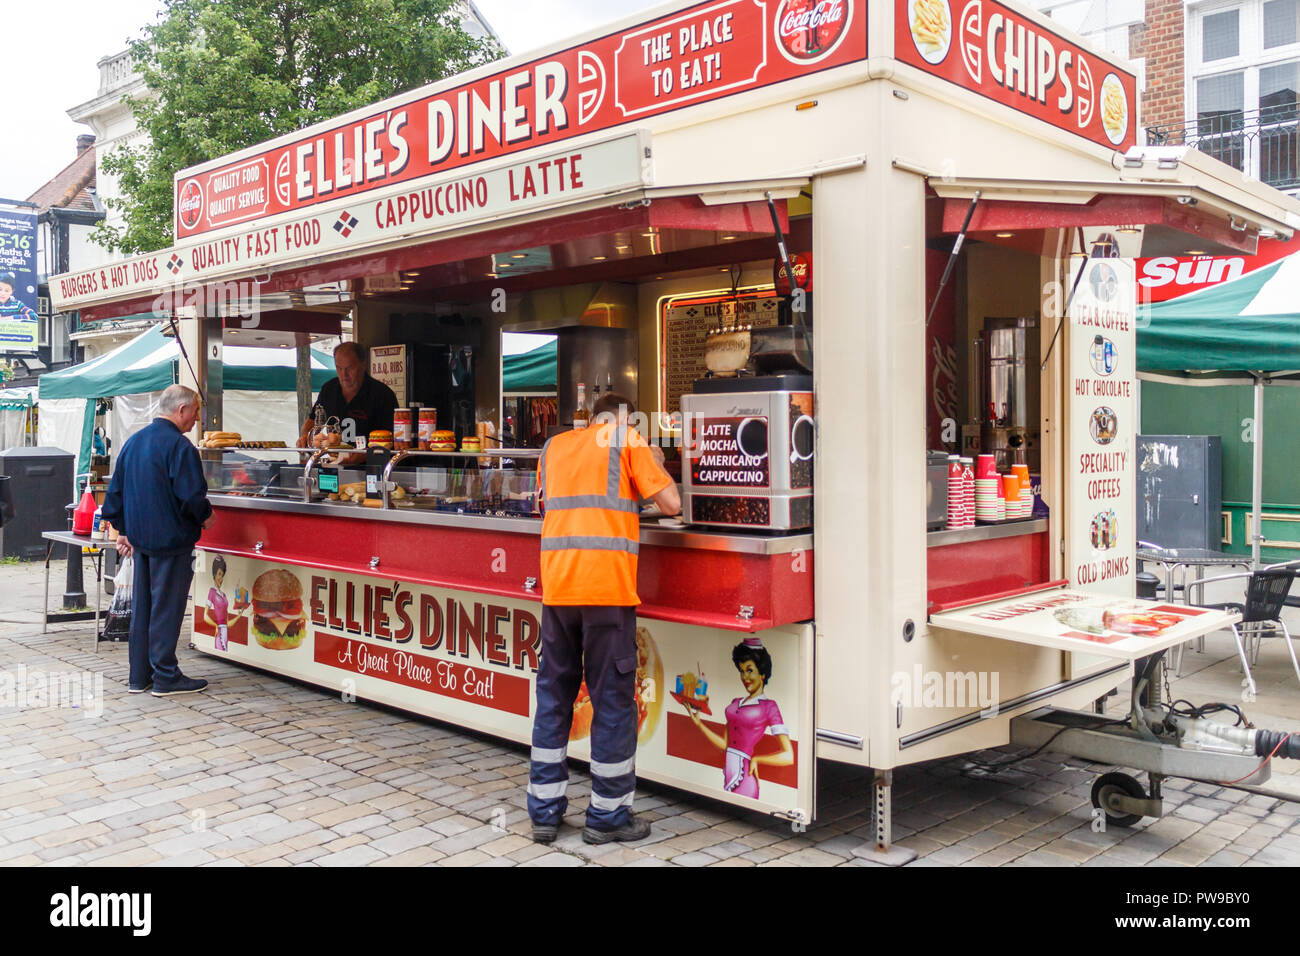 High Wycombe, England - 2. Juni 2018: Ellies Diner mobile Essen Fahrzeug. Das Restaurant serviert Fast Food und Getränke Stockfoto